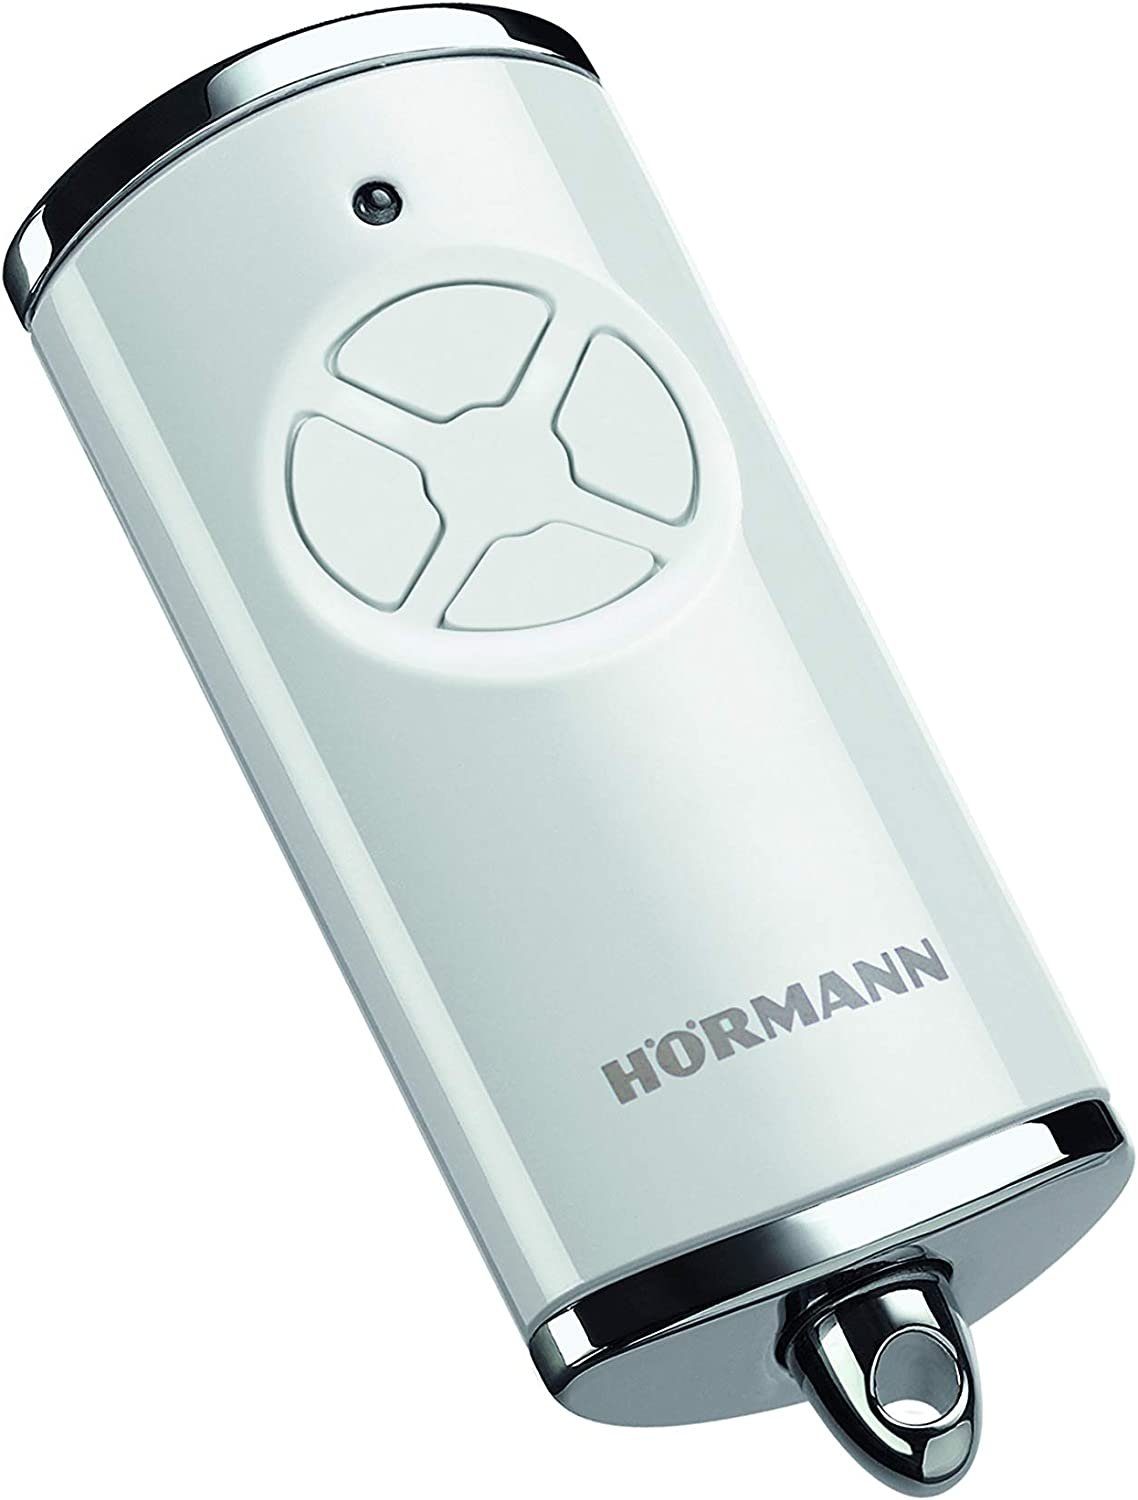 Handsender Hörmann HSM4 blaue Tasten 868 MHz vier Tasten